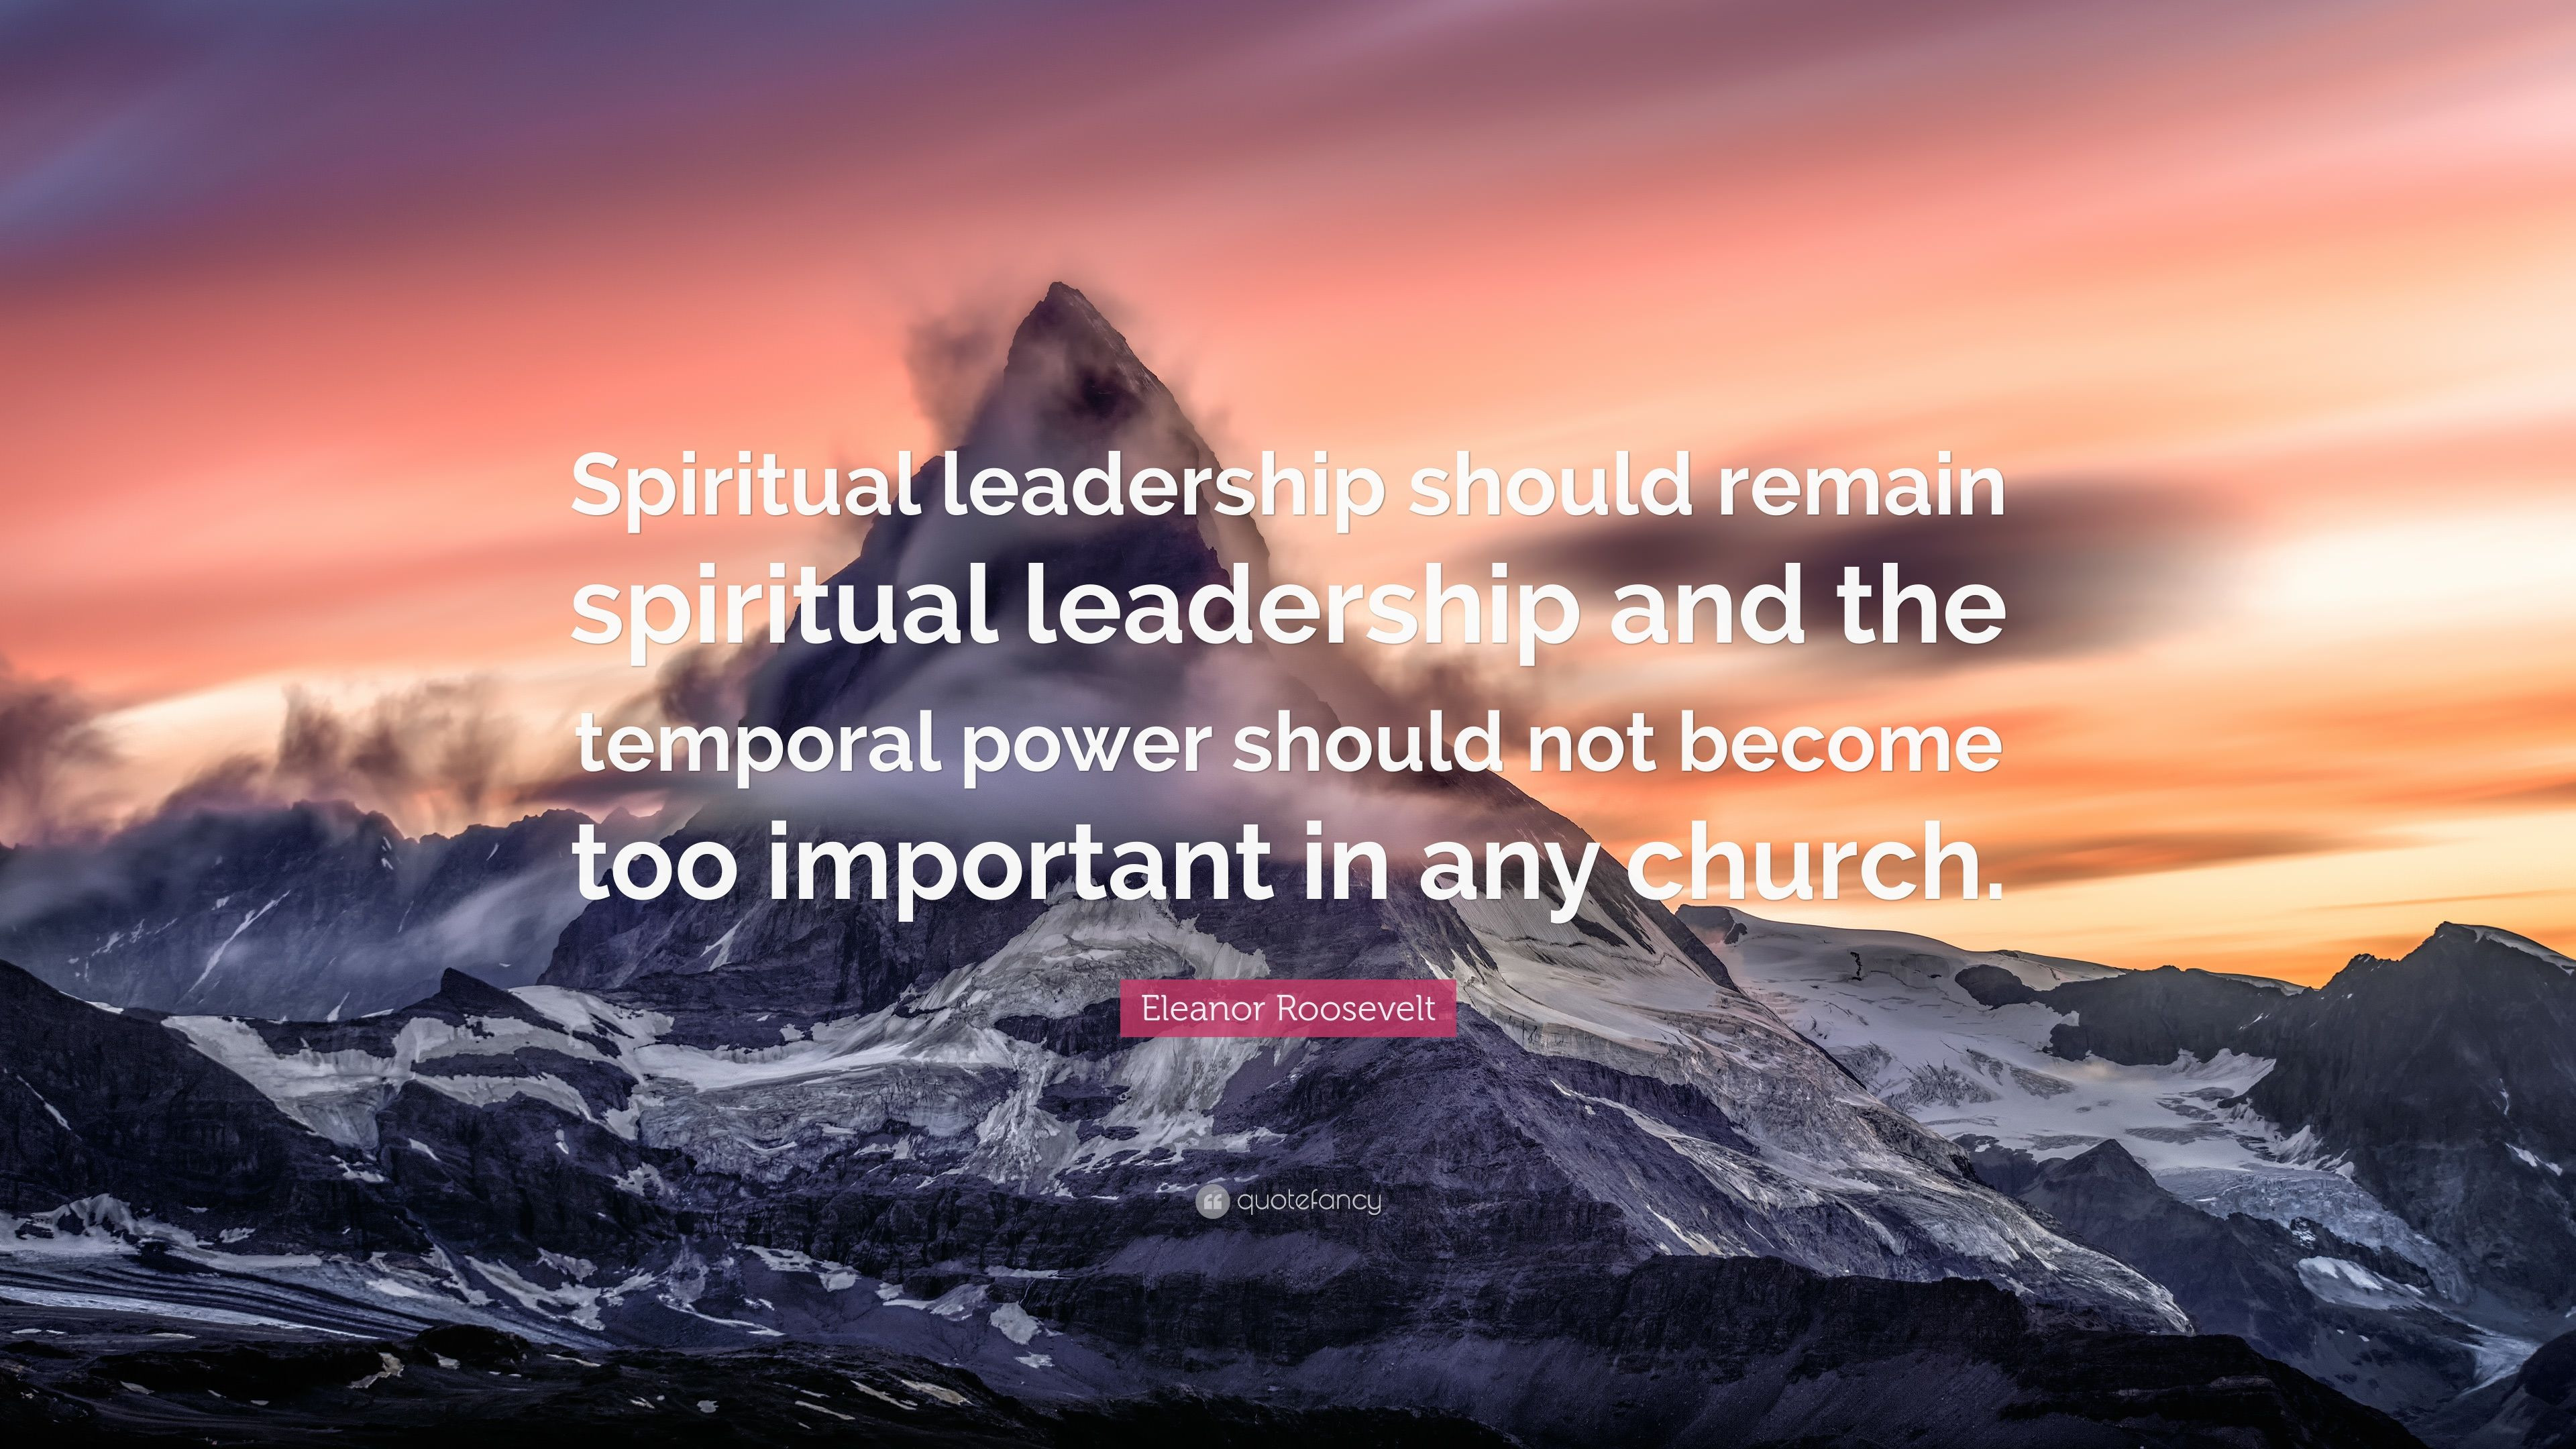 Spiritual Leadership Quotes
 Eleanor Roosevelt Quote “Spiritual leadership should